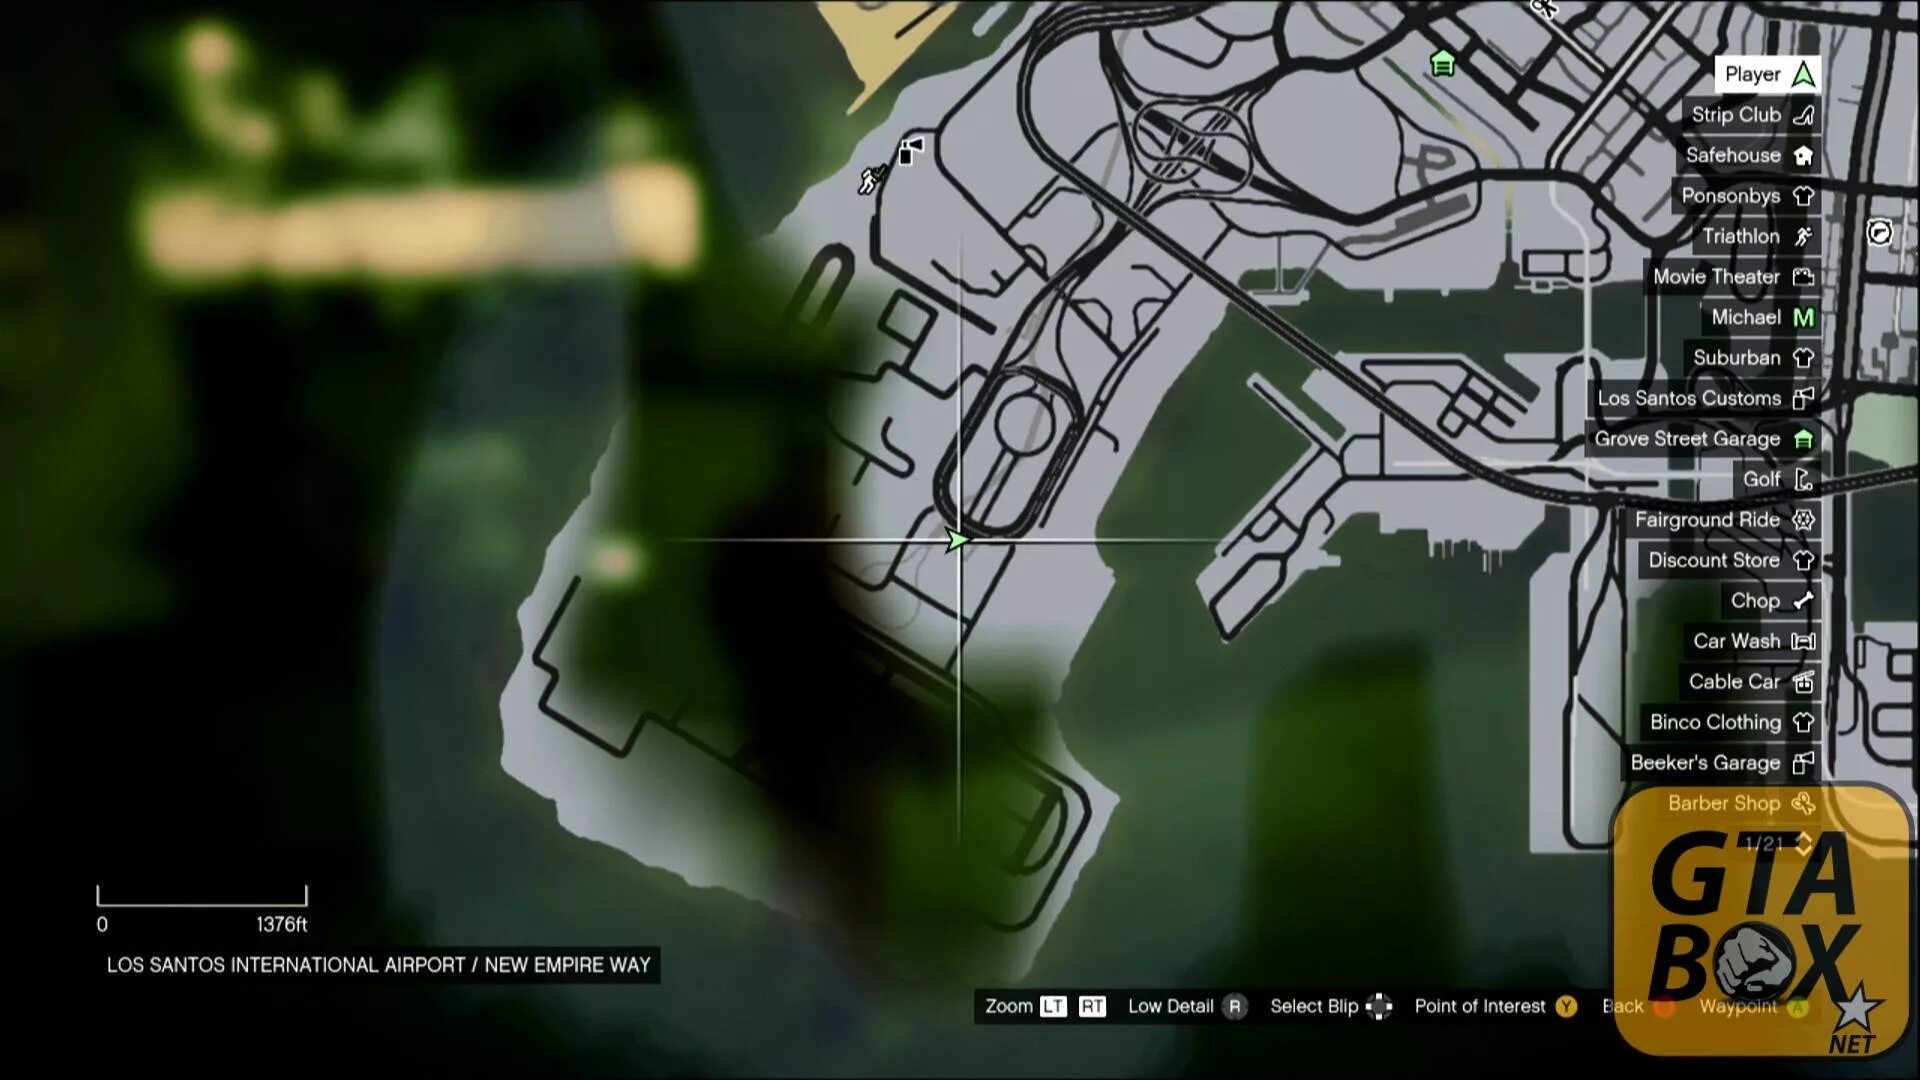 Карта обрывков писем. Карта GTA 5 Xbox 360. Карта обрывков письма в GTA 5. Карта всех писем в ГТА 5. Карта обрывков в ГТА 5.